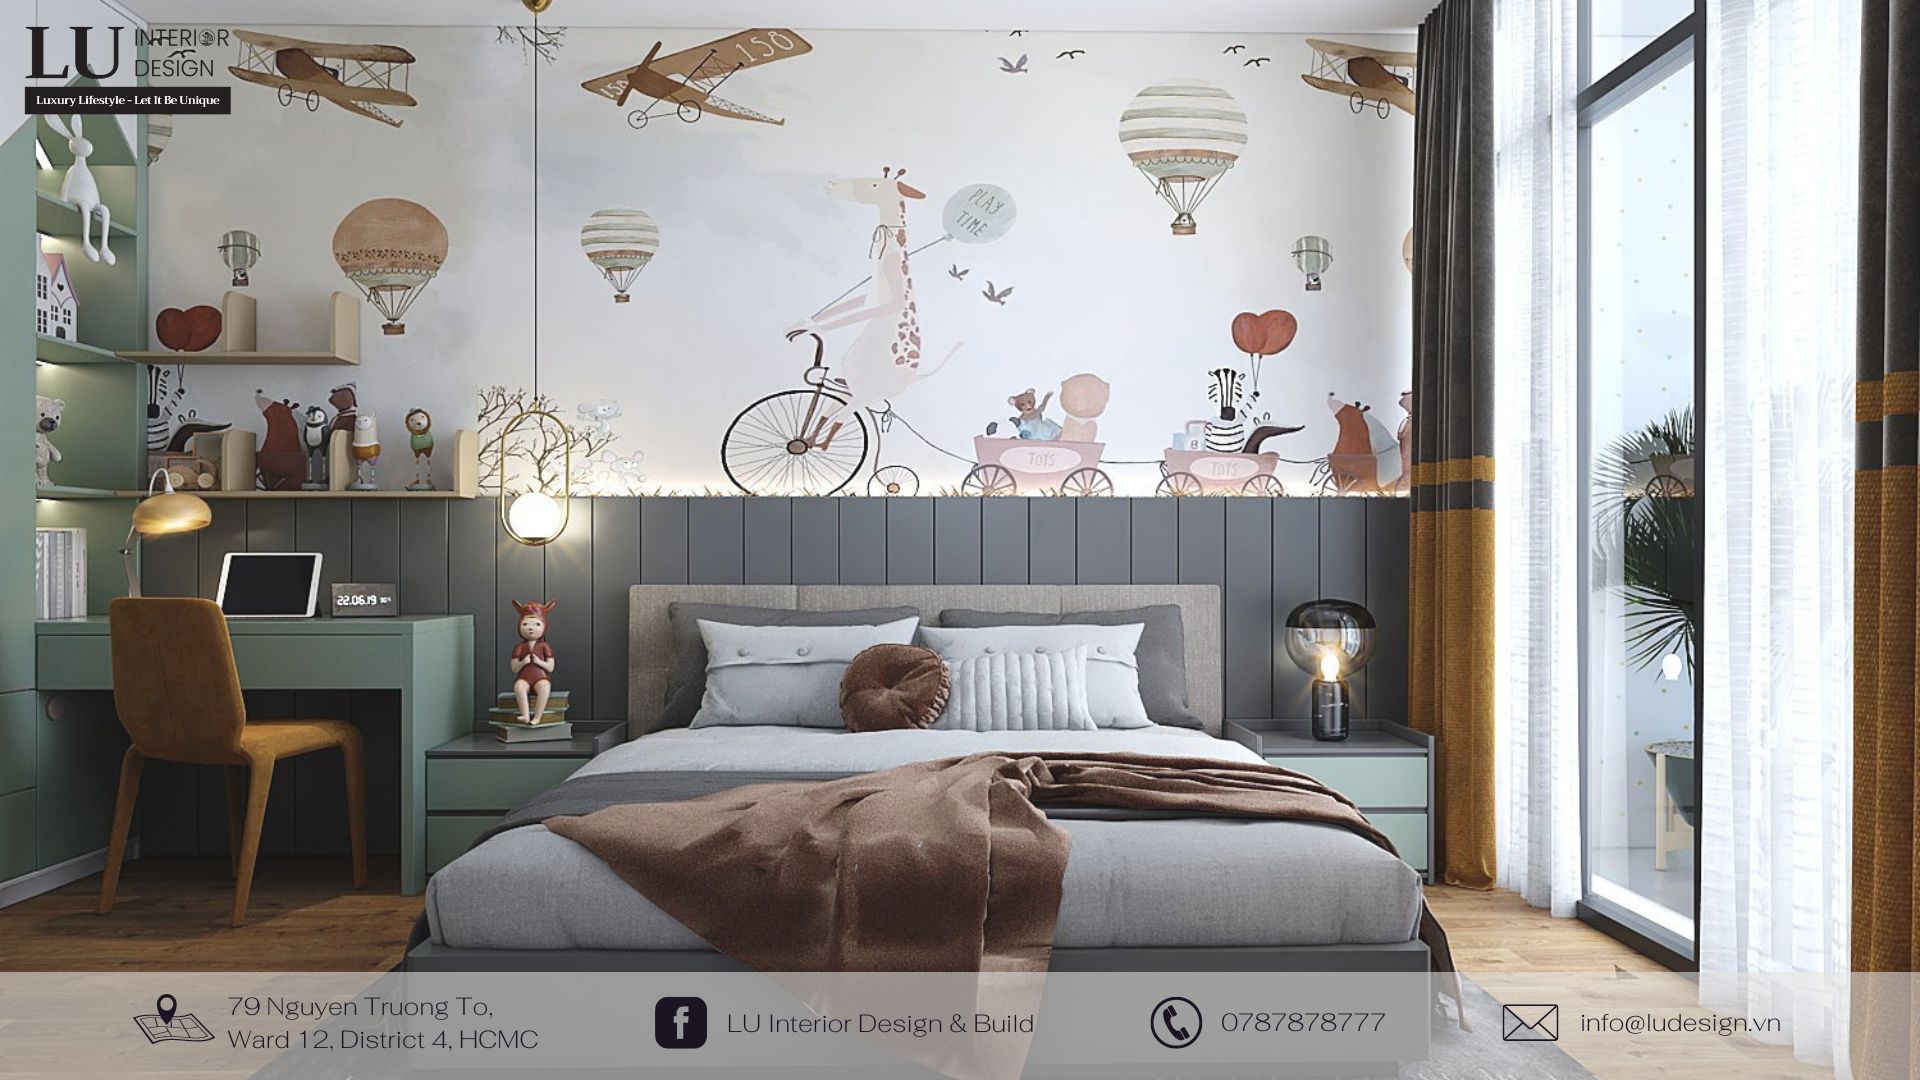 Các thiết kế nội thất phòng ngủ được sử dụng những loại vật liệu an toàn, chất lượng | Dự án căn hộ Petro Landmark - LU Design thực hiện.